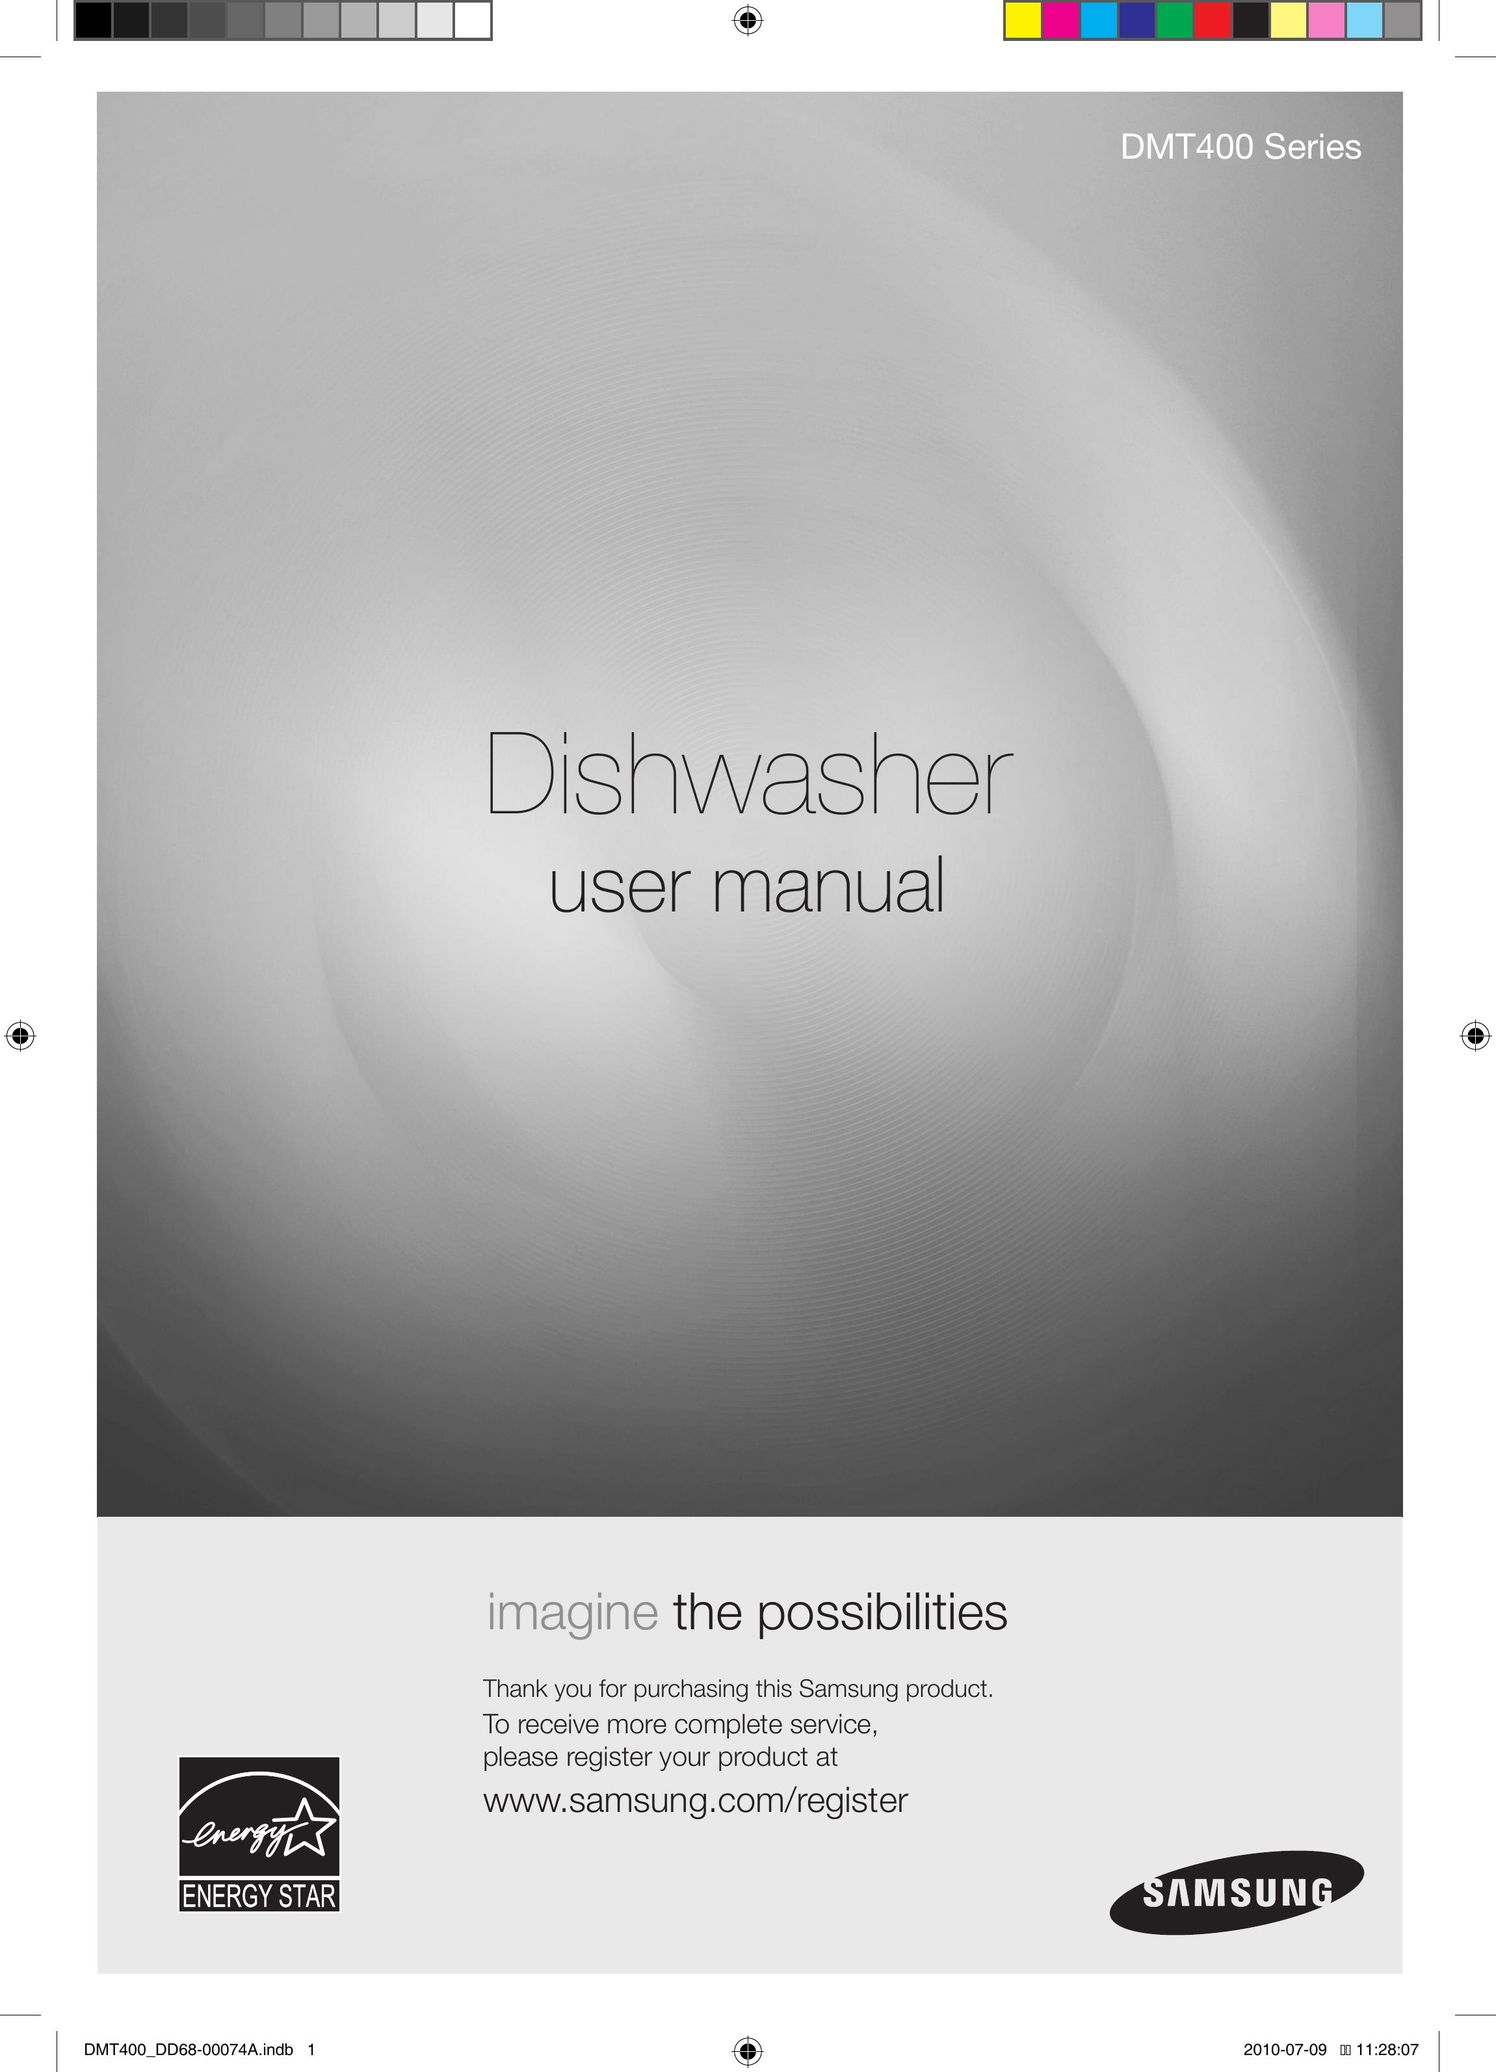 Samsung DMT400DD68-00074A Dishwasher User Manual